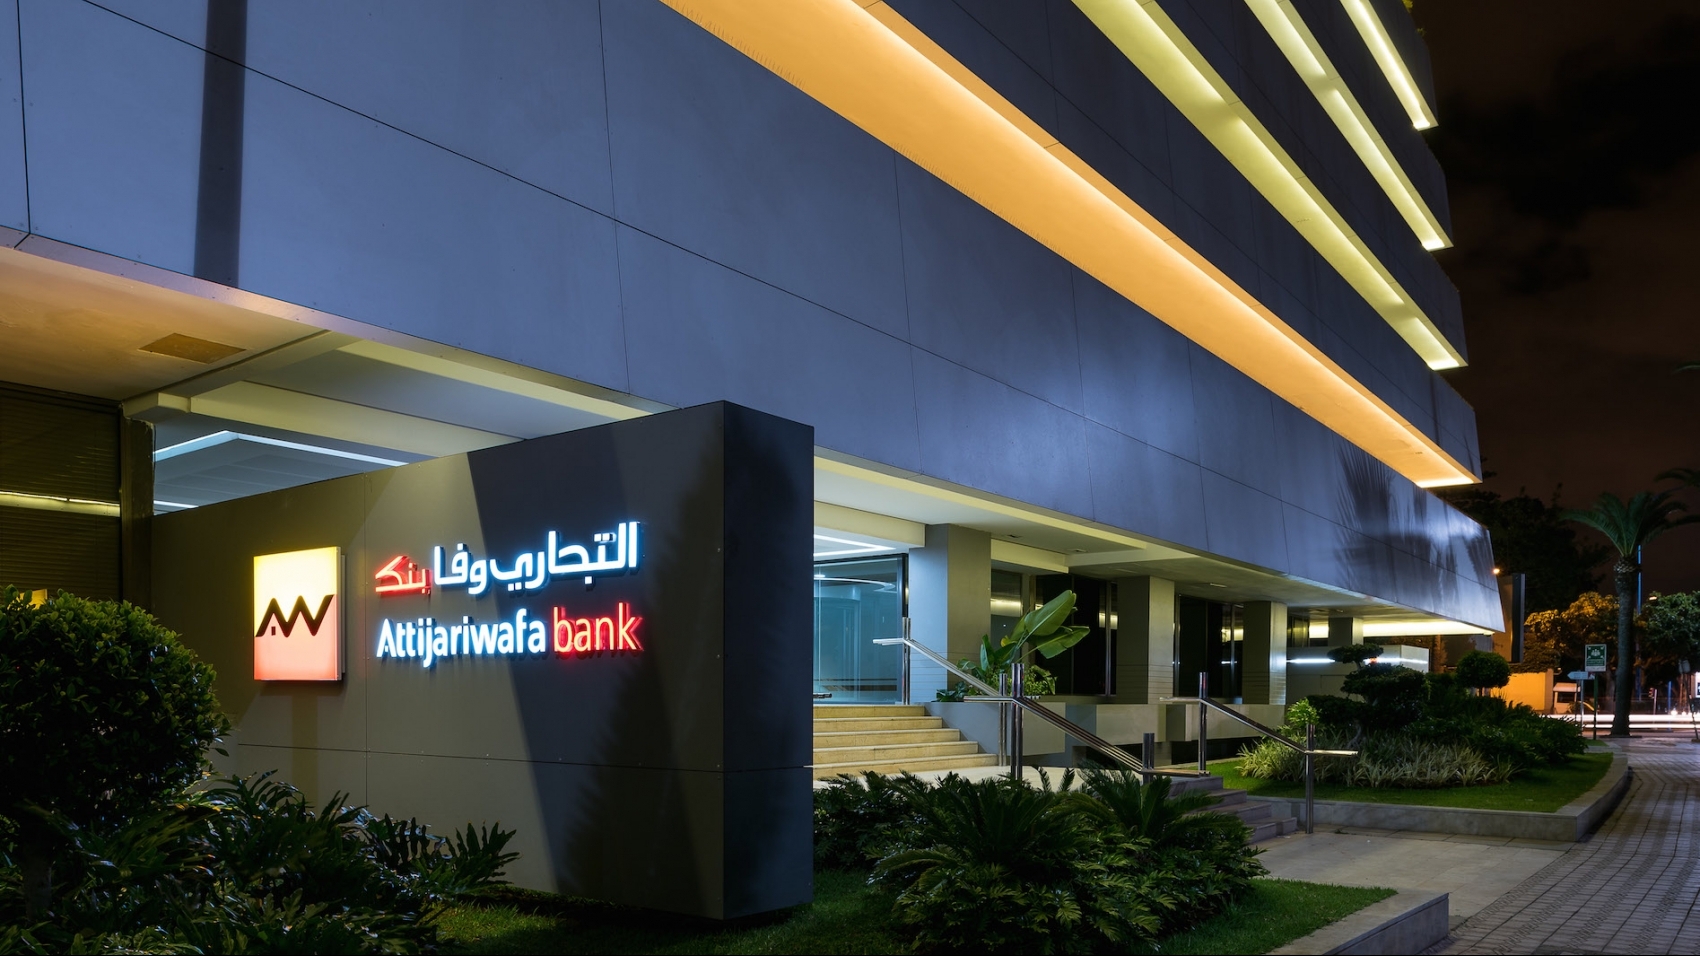 La dernière émission obligataire d'Attijariwafa bank sursouscrite 4,94 fois